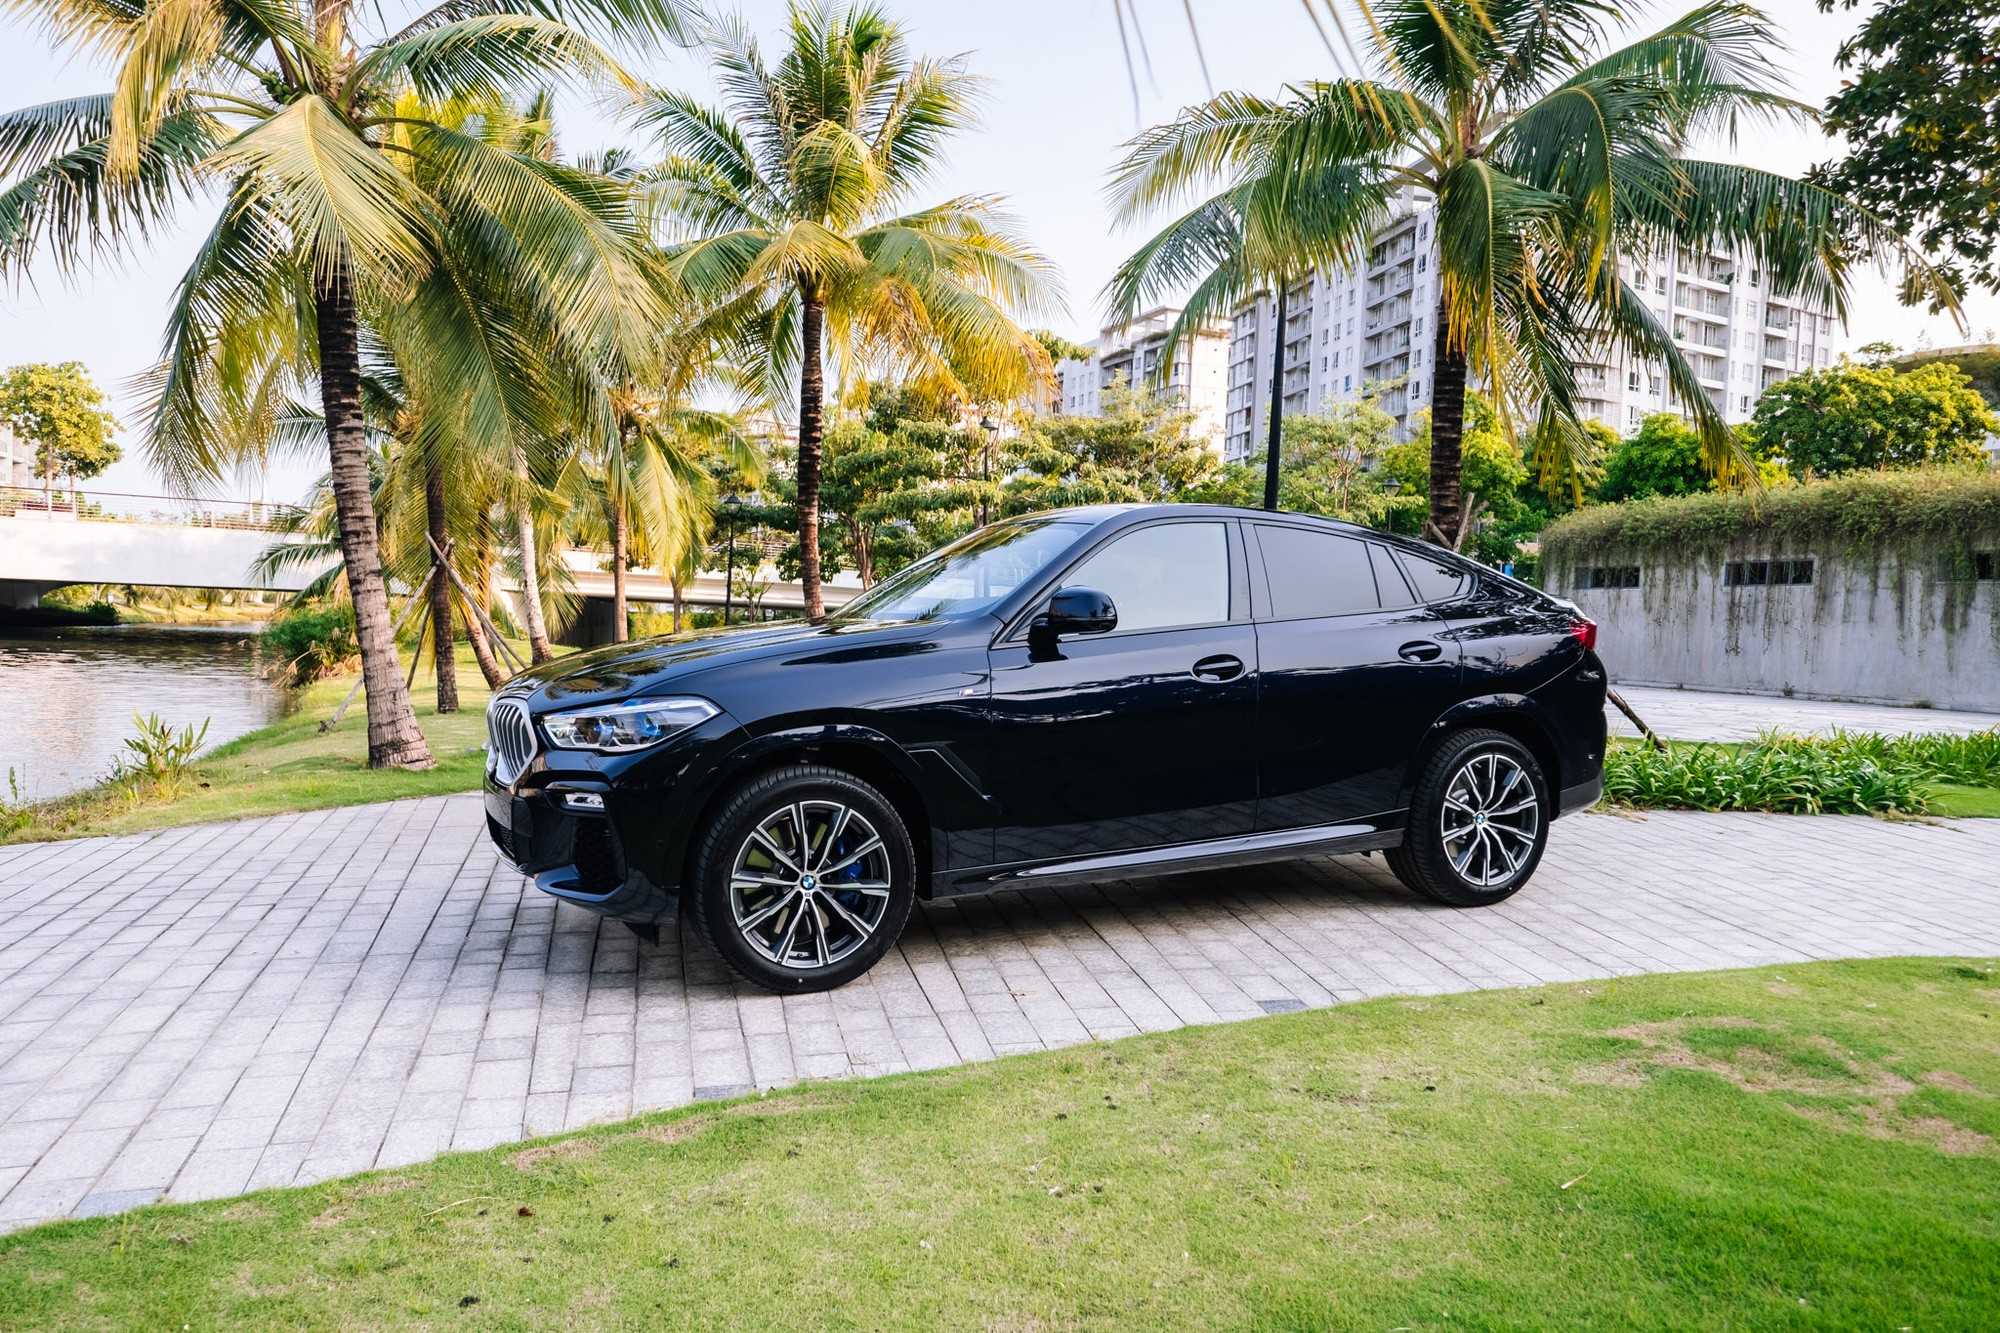 BMW X6 2020 giá hơn 4,8 tỷ đồng: Sẵn sàng đối đầu cùng Mercedes GLE Coupe tại thị trường Việt Nam